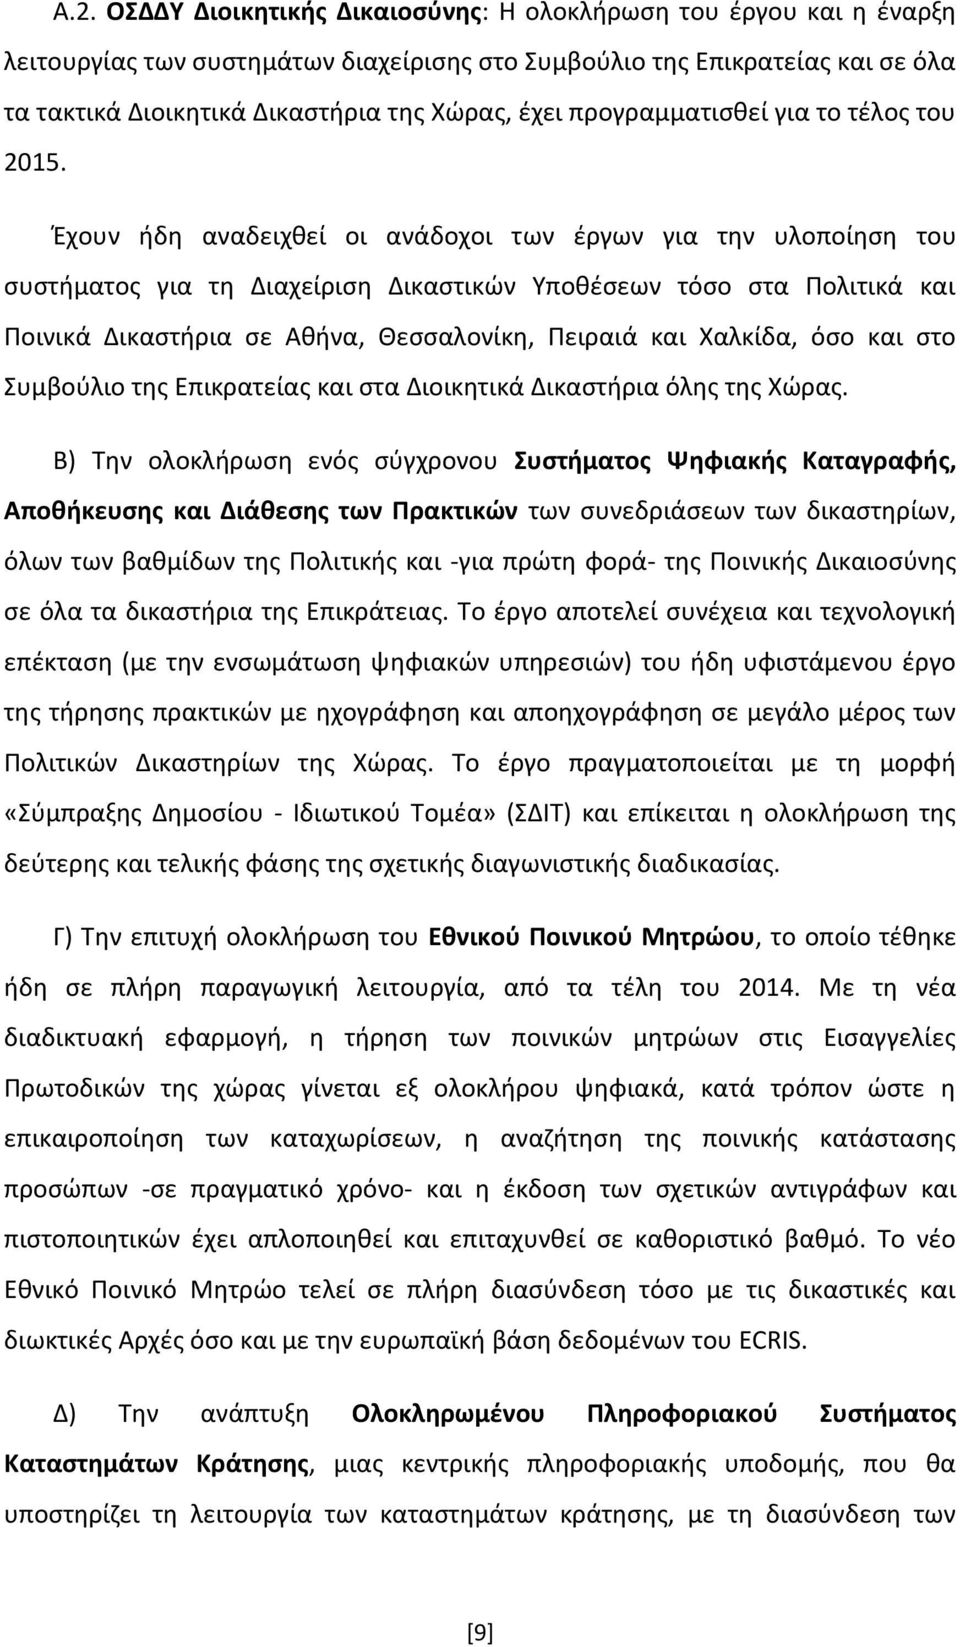 Έχουν ήδη αναδειχθεί οι ανάδοχοι των έργων για την υλοποίηση του συστήματος για τη Διαχείριση Δικαστικών Υποθέσεων τόσο στα Πολιτικά και Ποινικά Δικαστήρια σε Αθήνα, Θεσσαλονίκη, Πειραιά και Χαλκίδα,